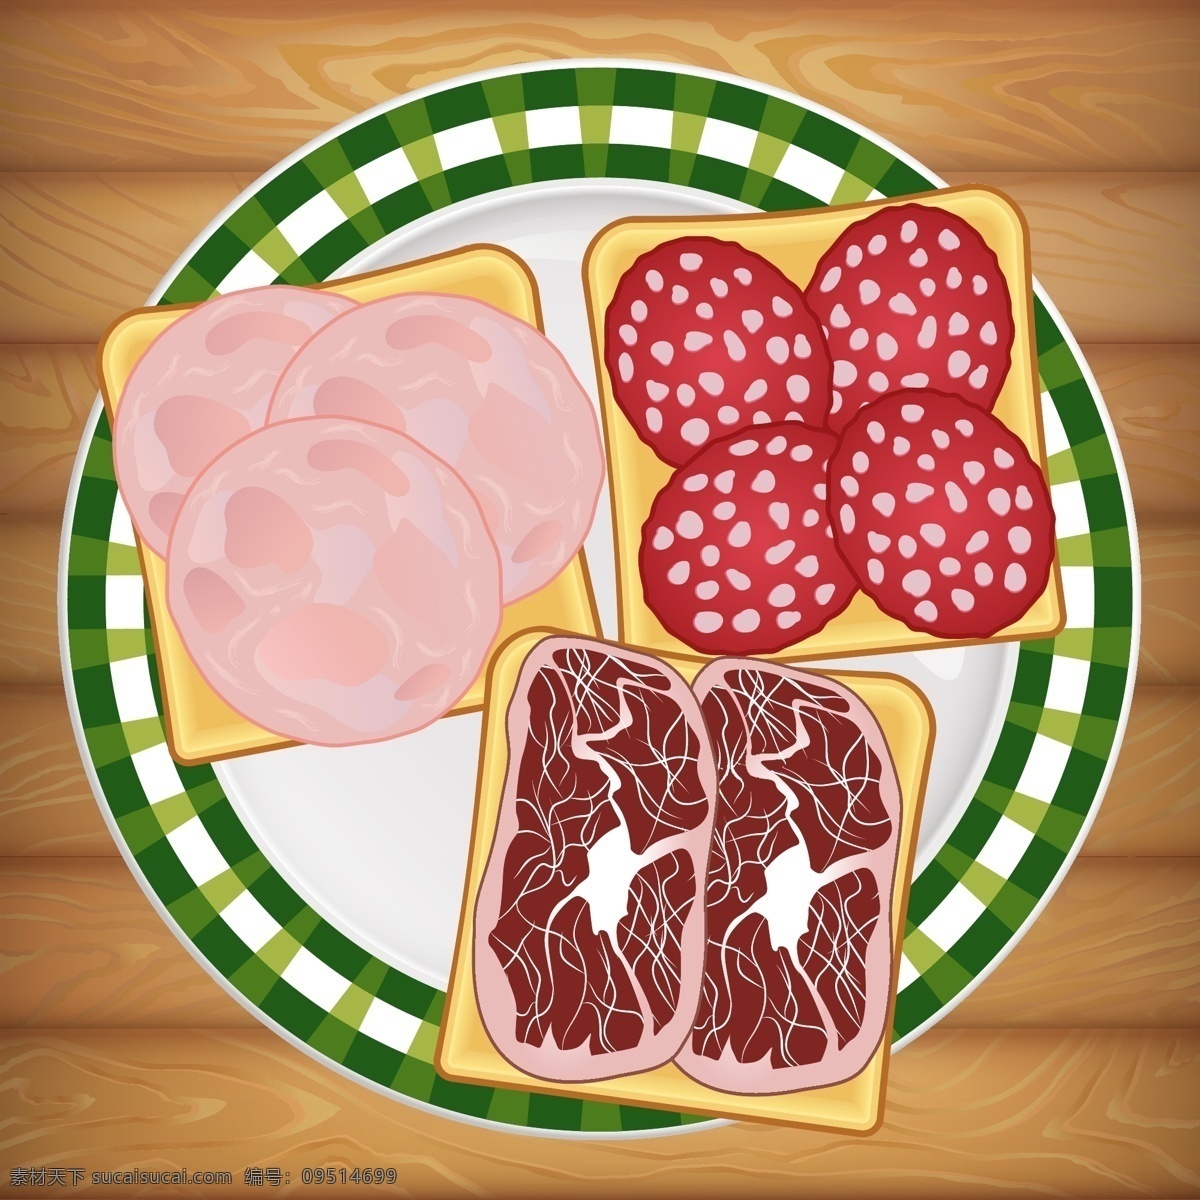 卡通 肉类 食物 矢量 熟食 盘子 装盘 矢量素材 装饰图案 设计元素